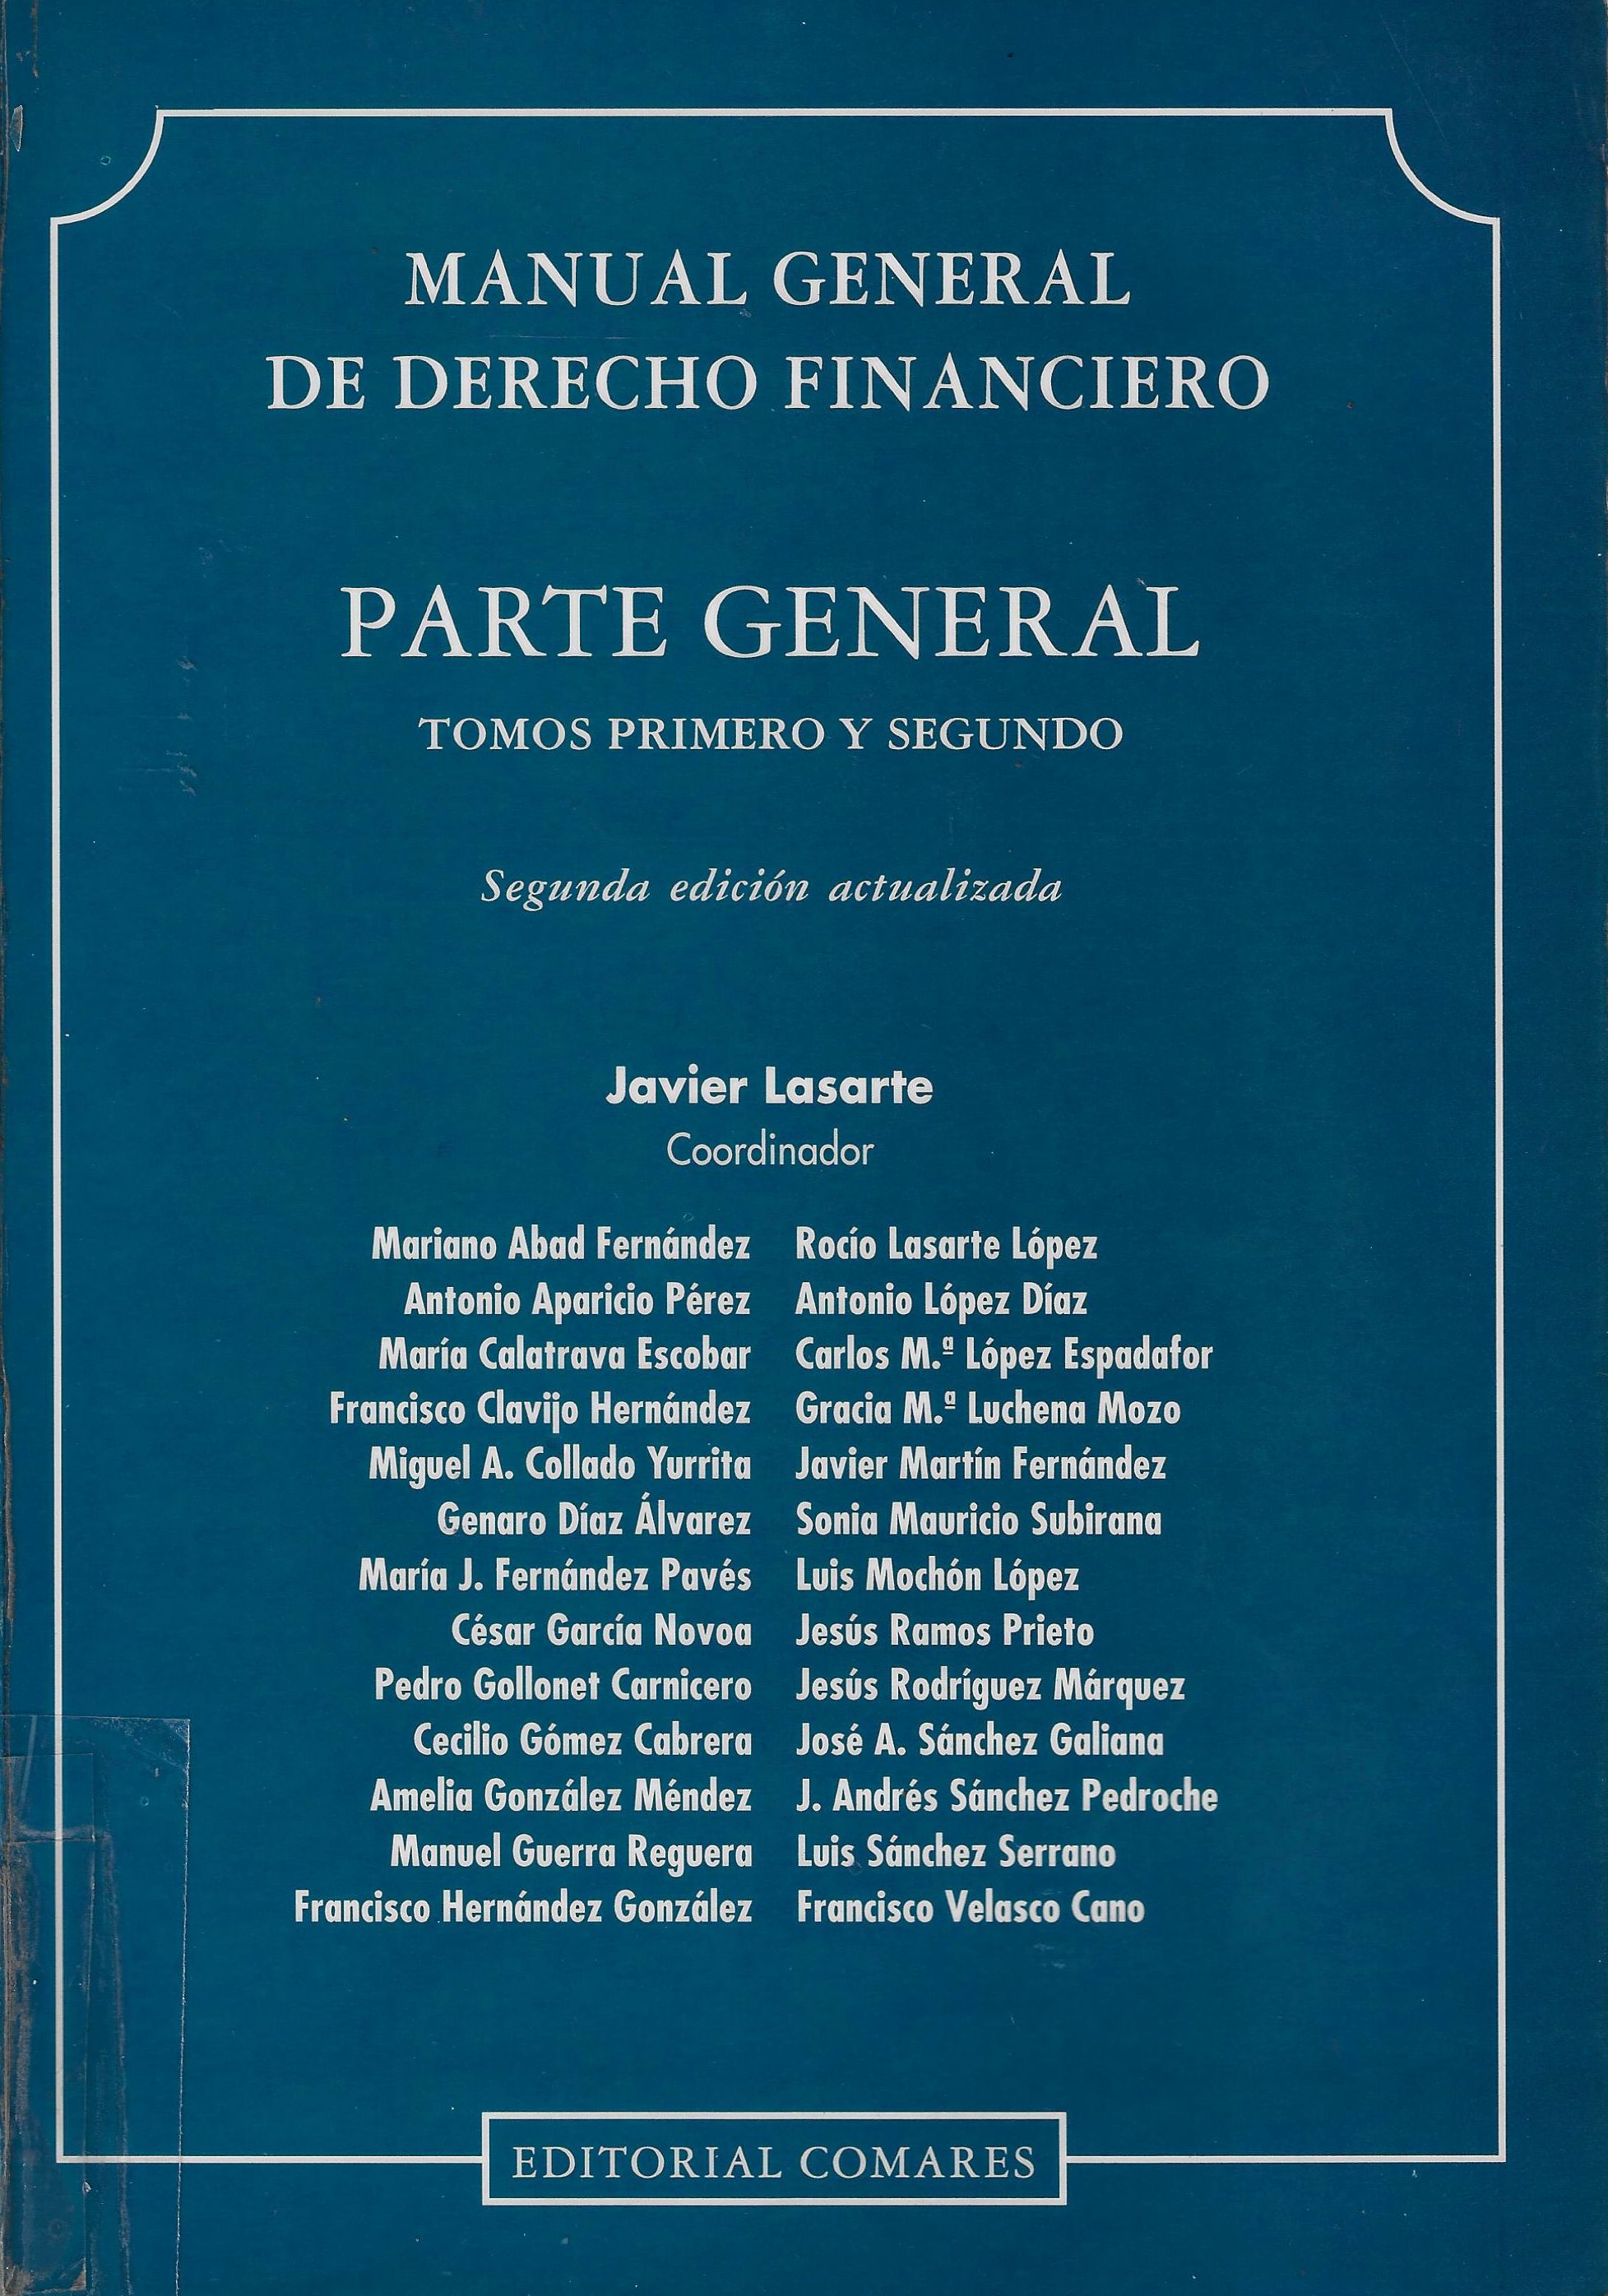 Imagen de portada del libro Manual general de derecho financiero